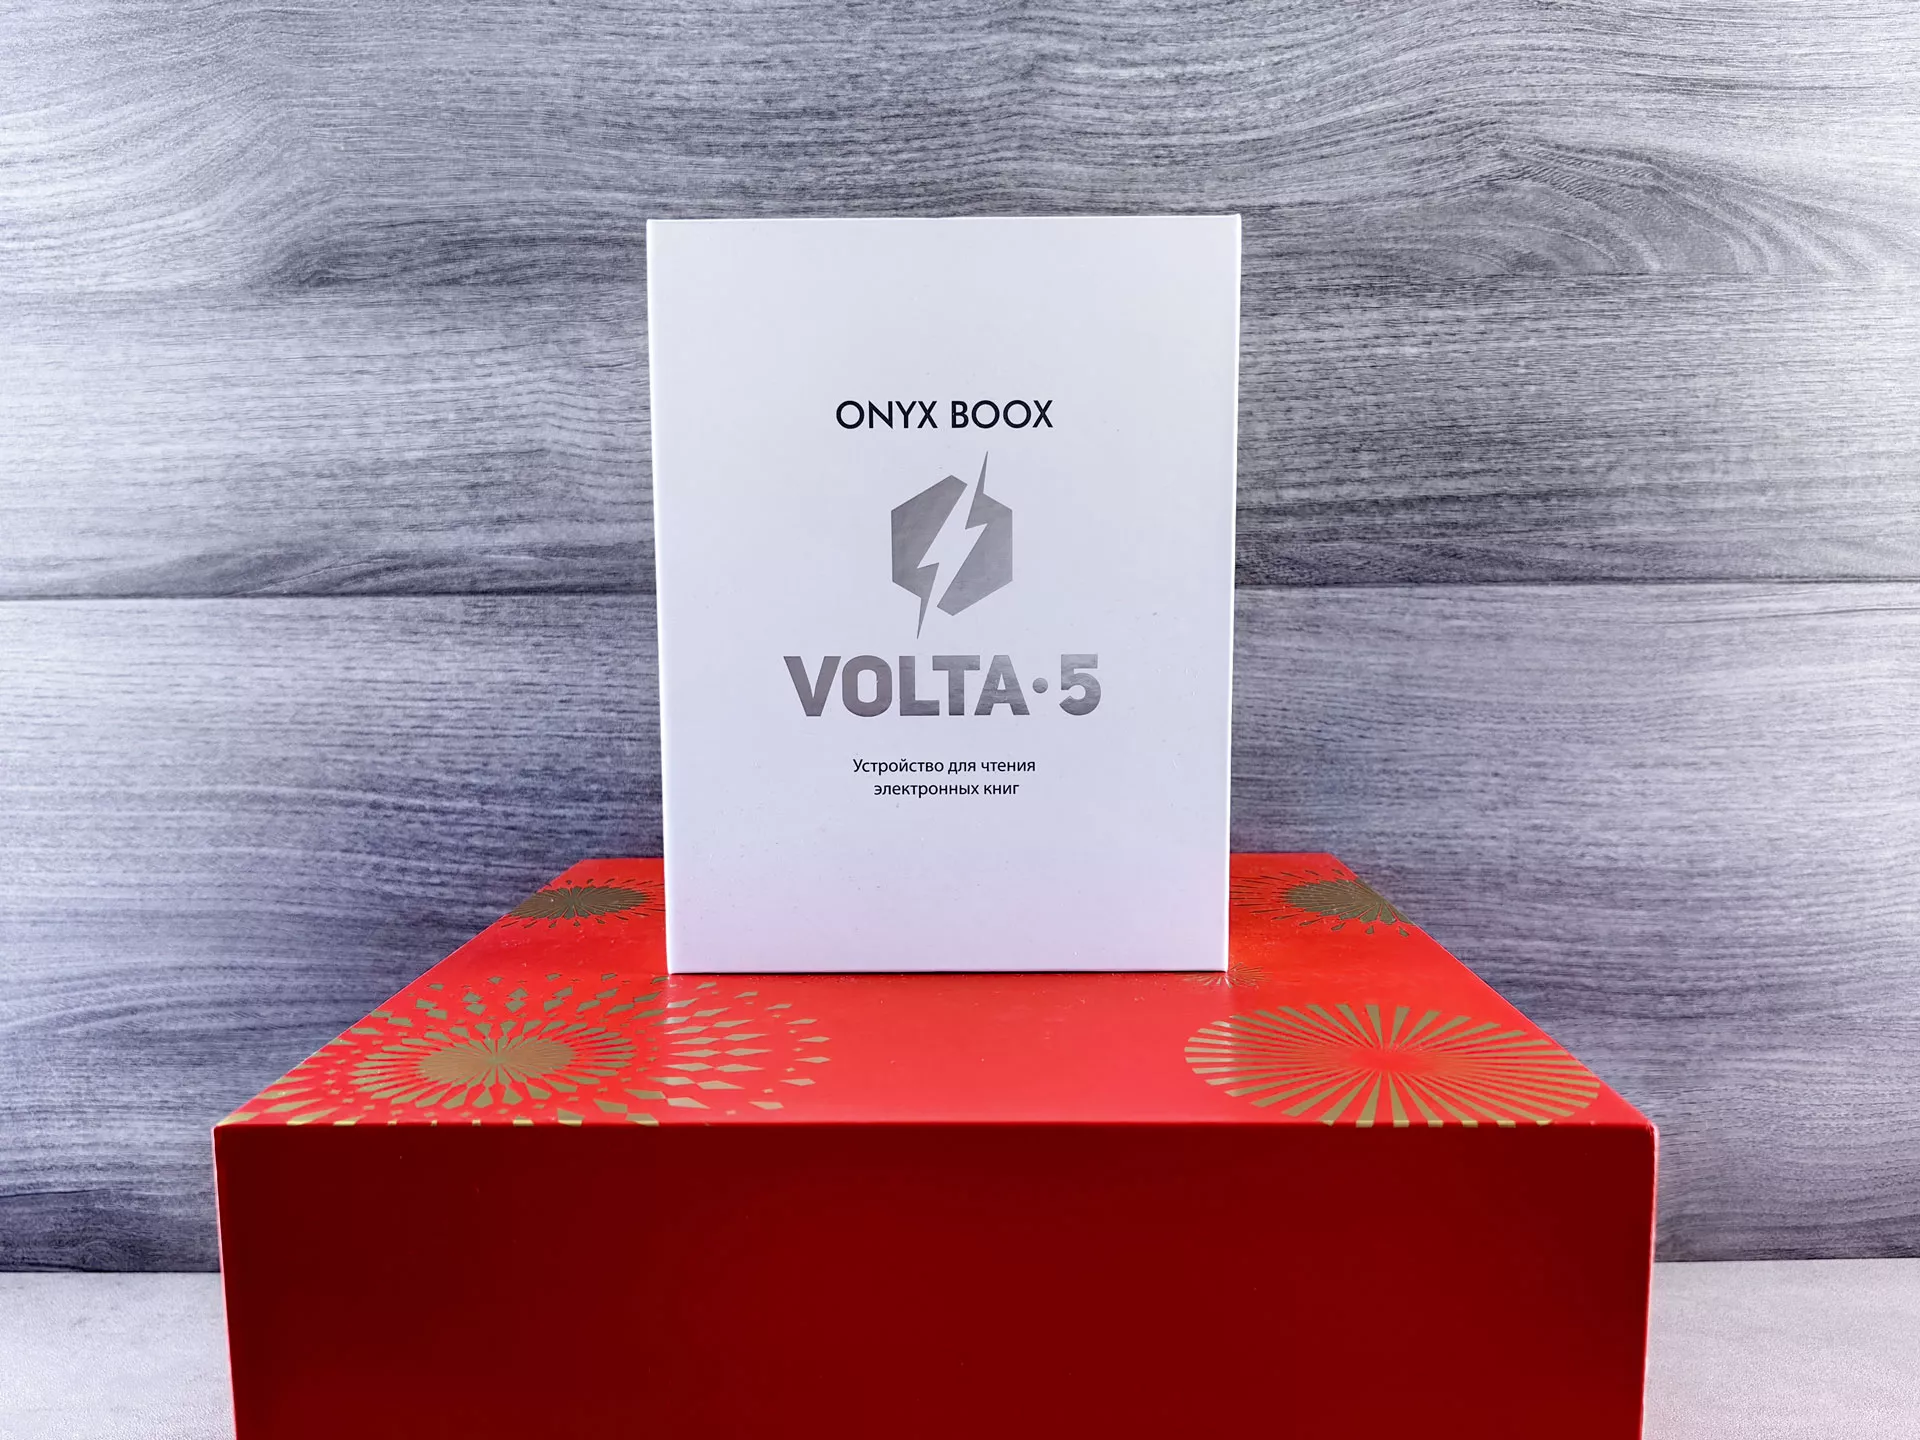 Обзор электронной книги ONYX BOOX Volta 5: больше, чем обычный ридер